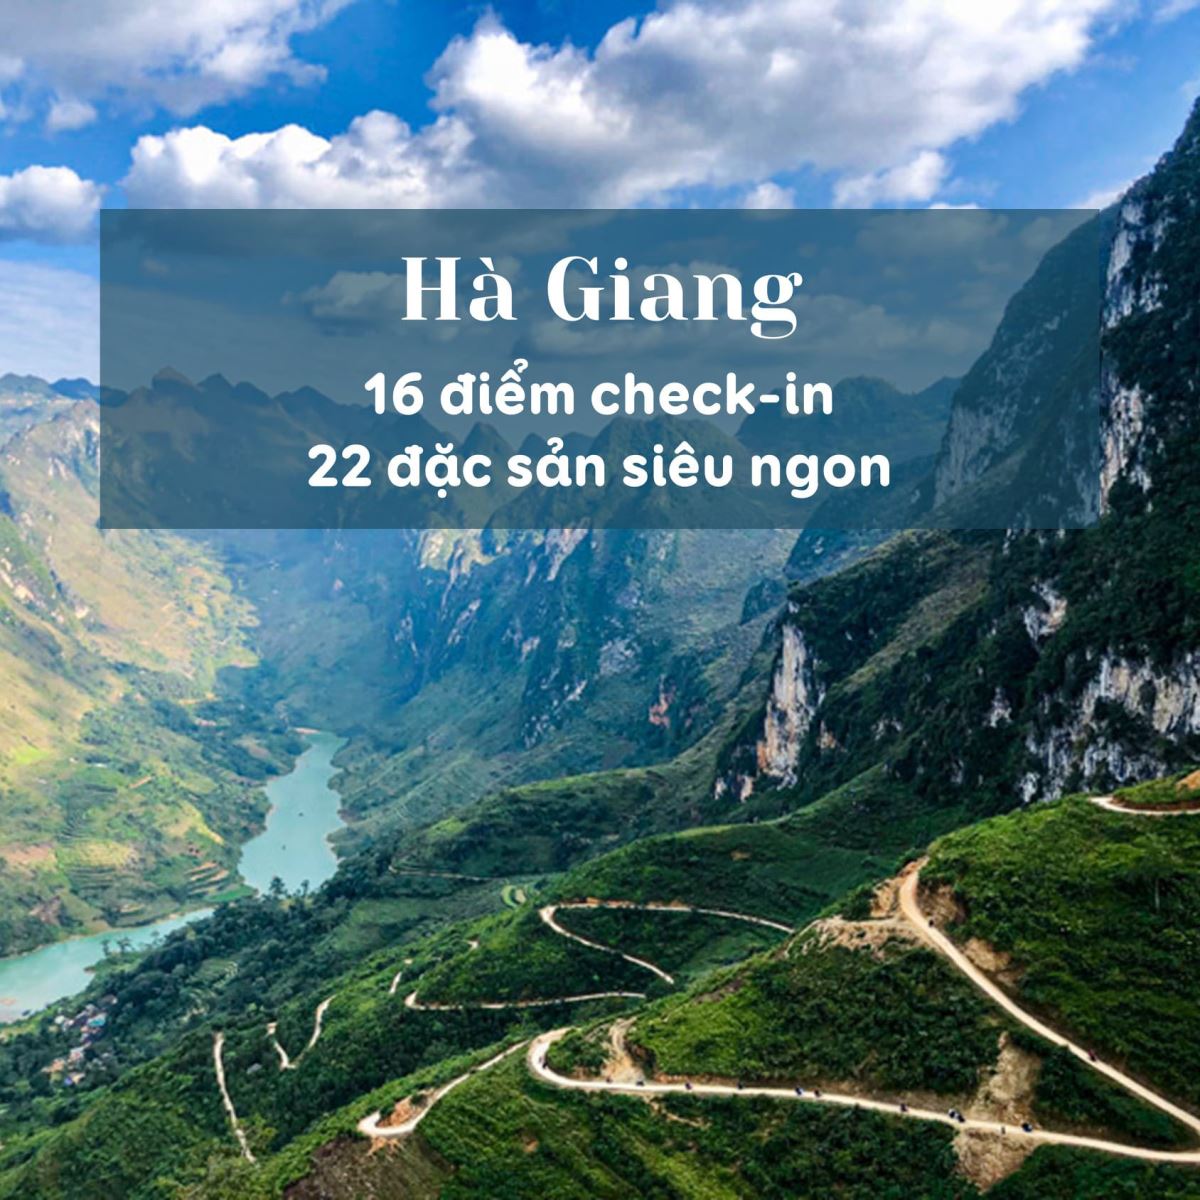 Check in Hà Giang với 16 điểm ăn chơi, 22 đặc sản siêu ngon 